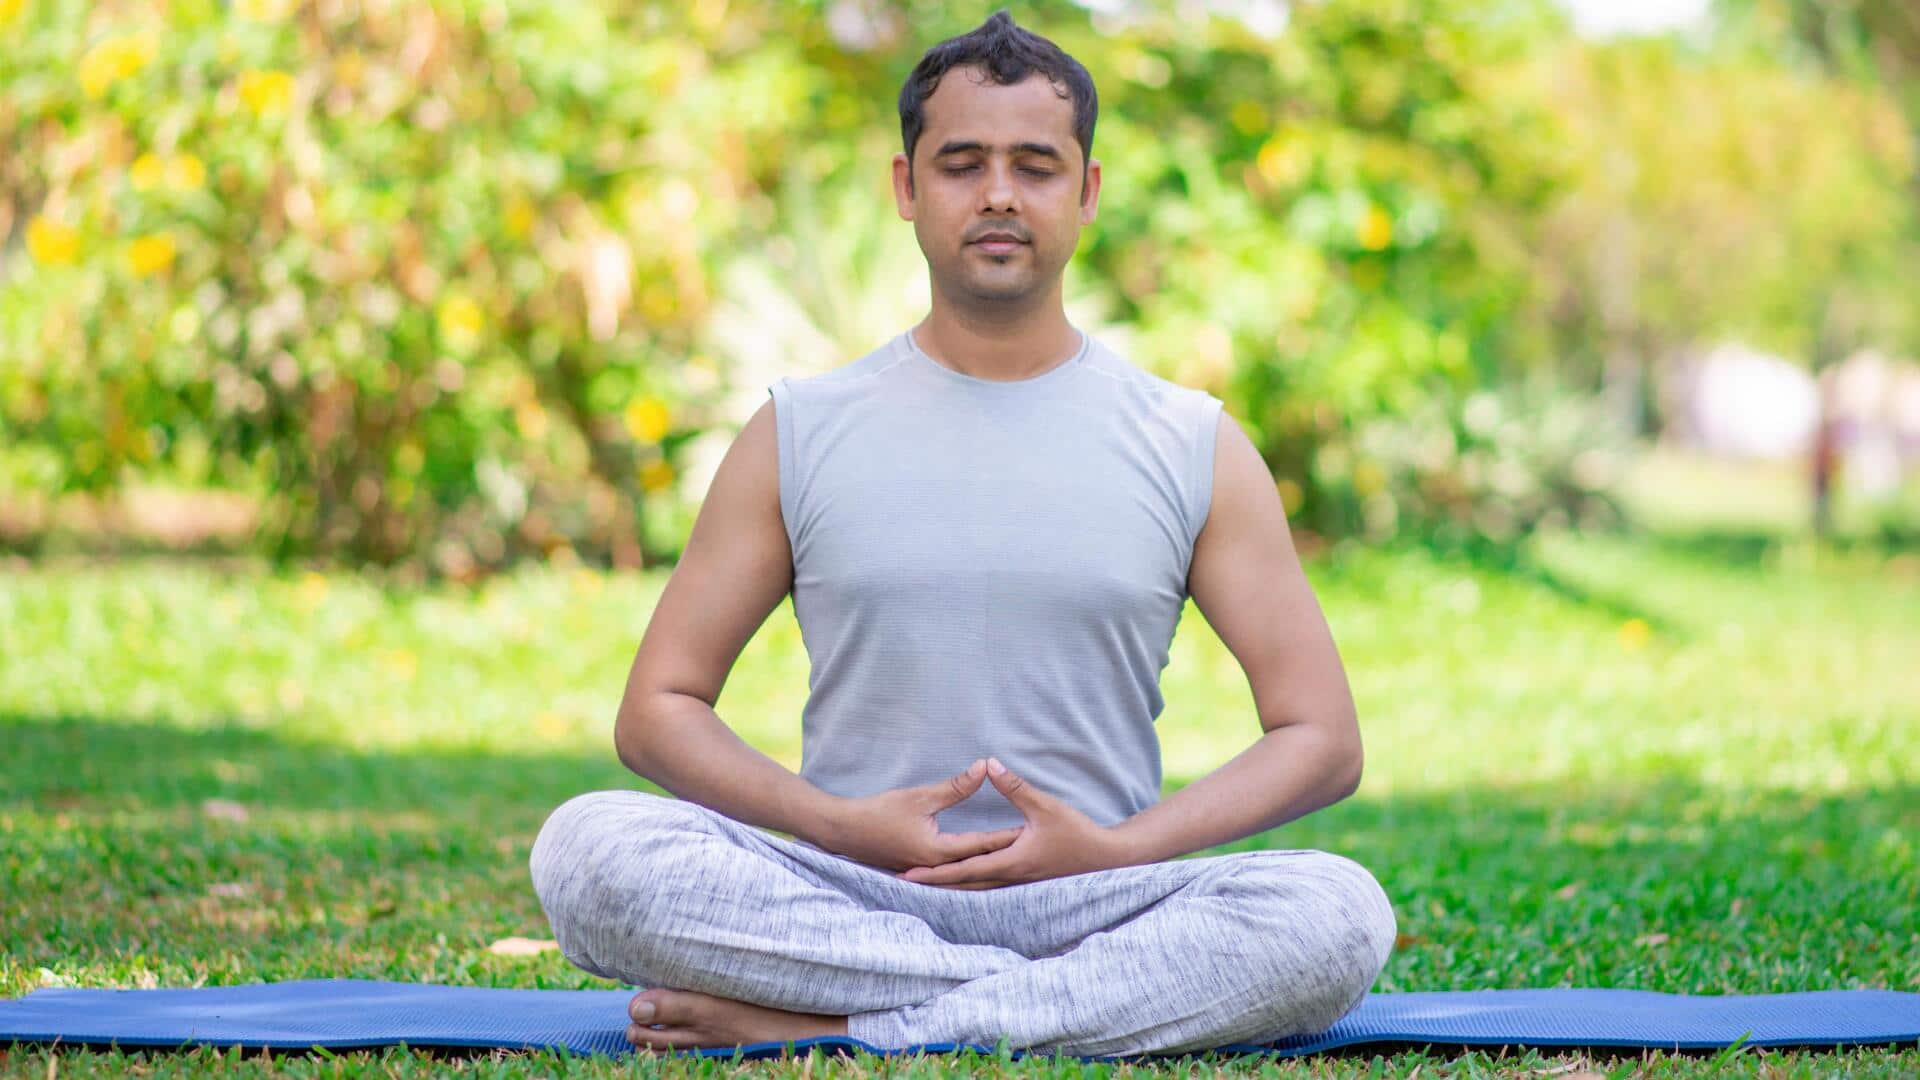 एंग्जायटी से राहत दिलाने में मदद कर सकते हैं ये 5 योगासन, जानिए अभ्यास का तरीका 